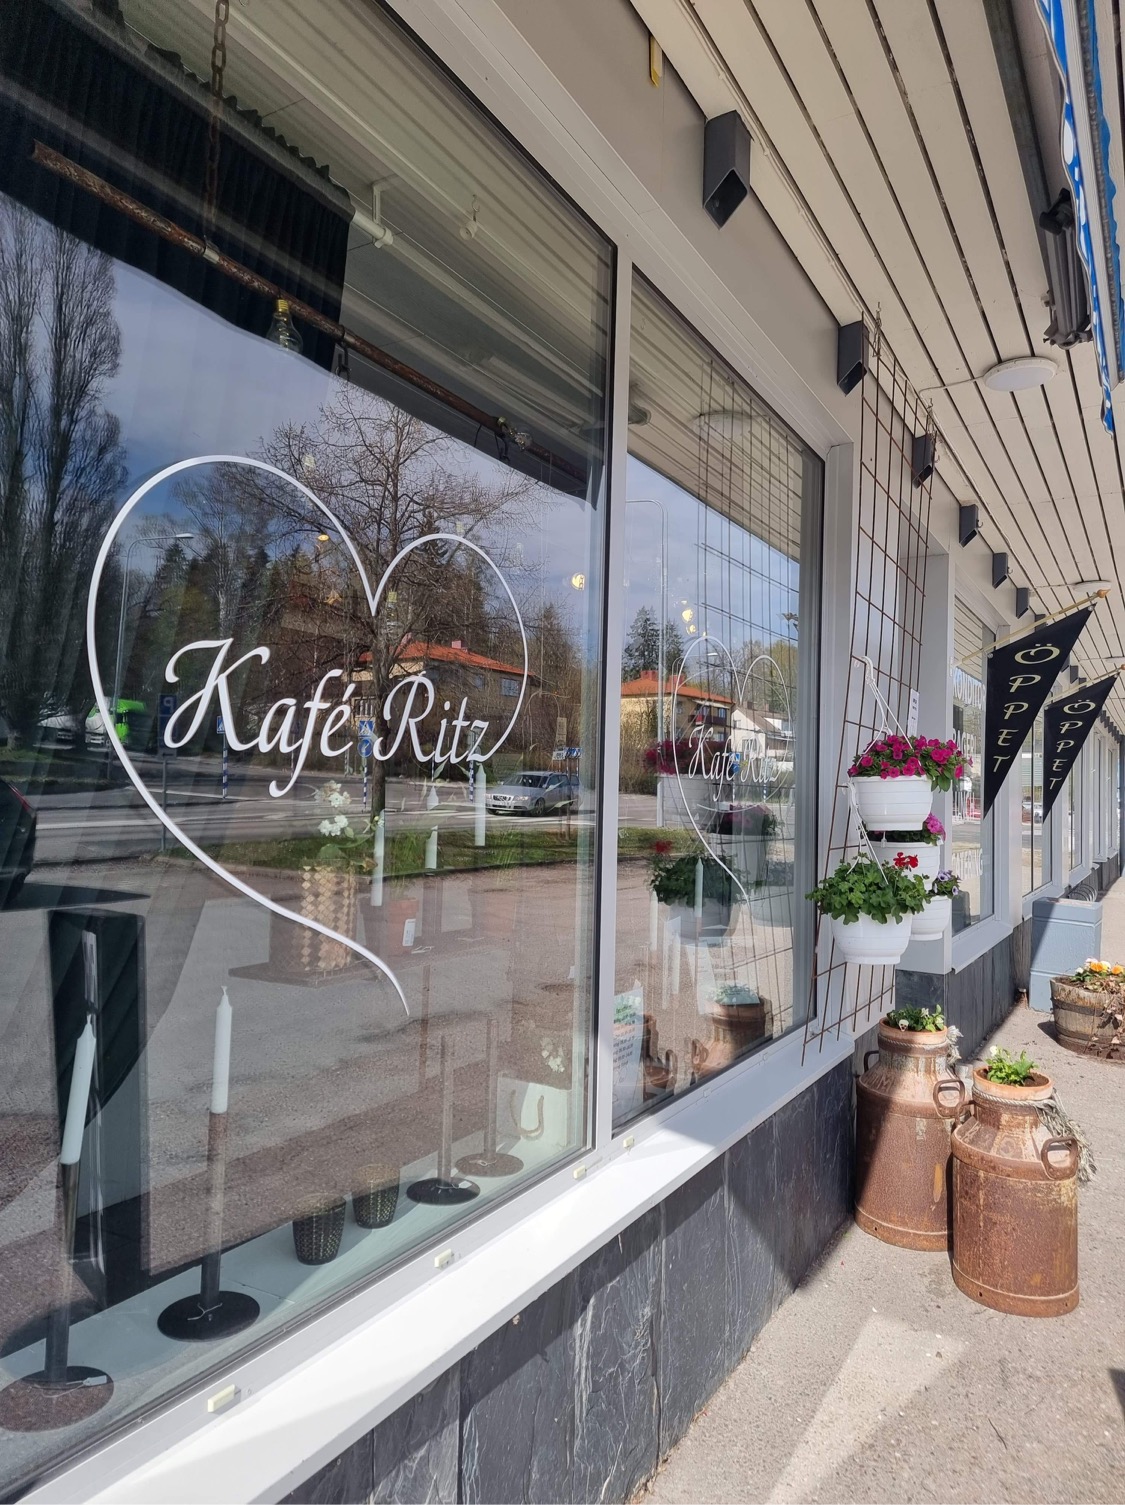 Kafé Ritz skyltfönster från utsidan med logotyp och blomster.